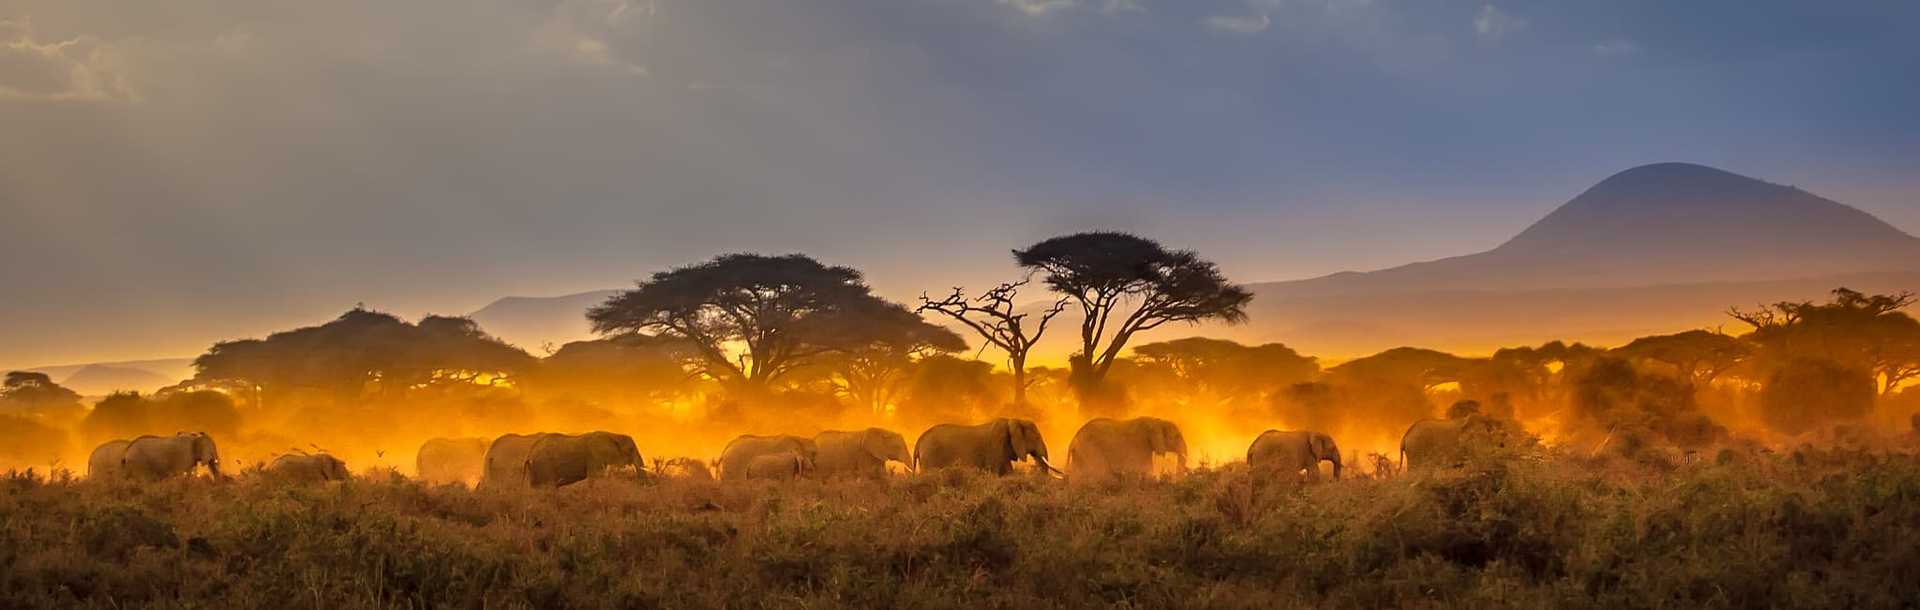 Herd of elephants in the African savannah